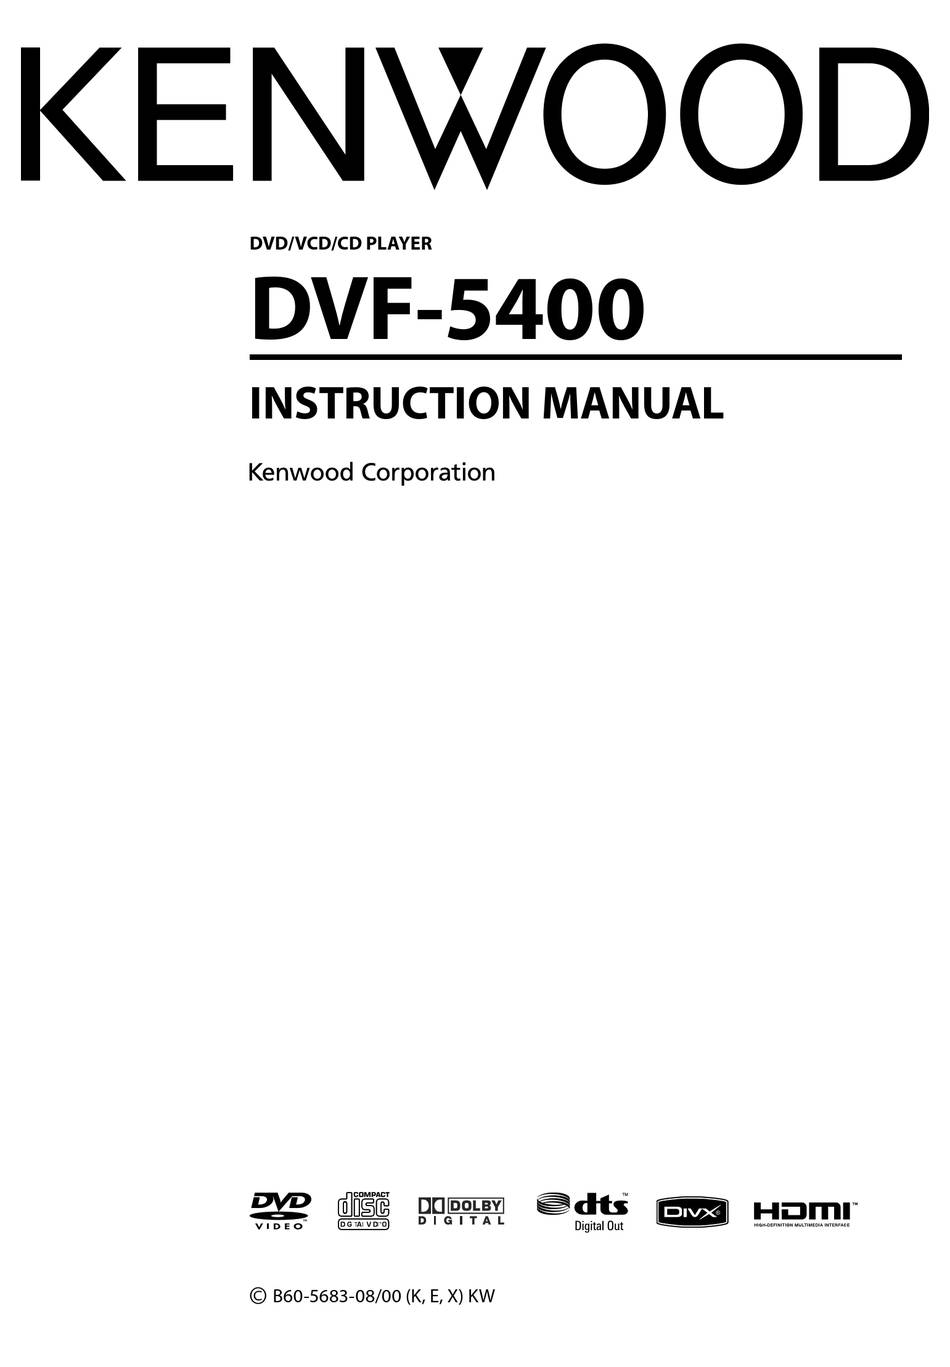 Kenwood DVF-5400